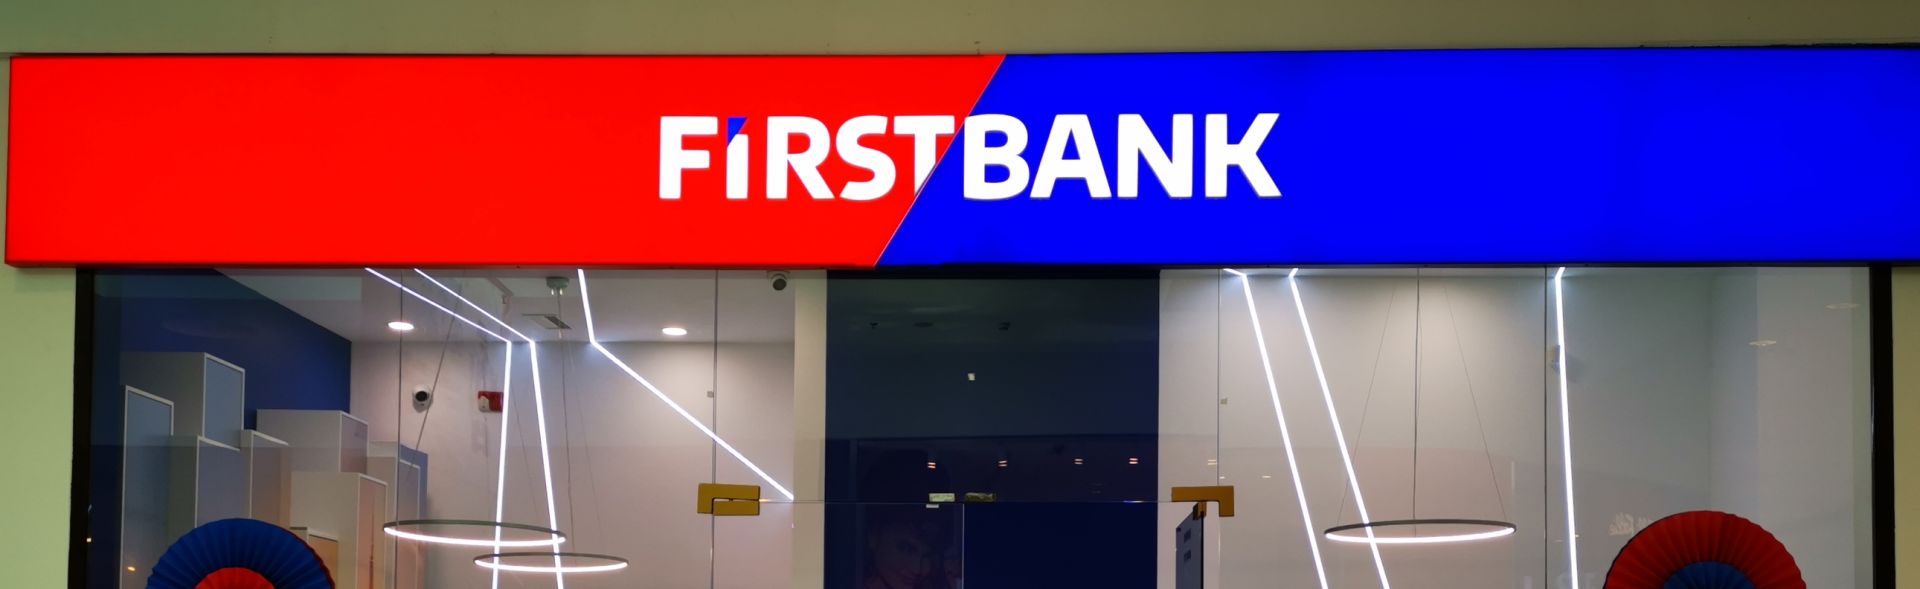 First Bank oferă companiilor credite verzi care le permit să devină prosumatori